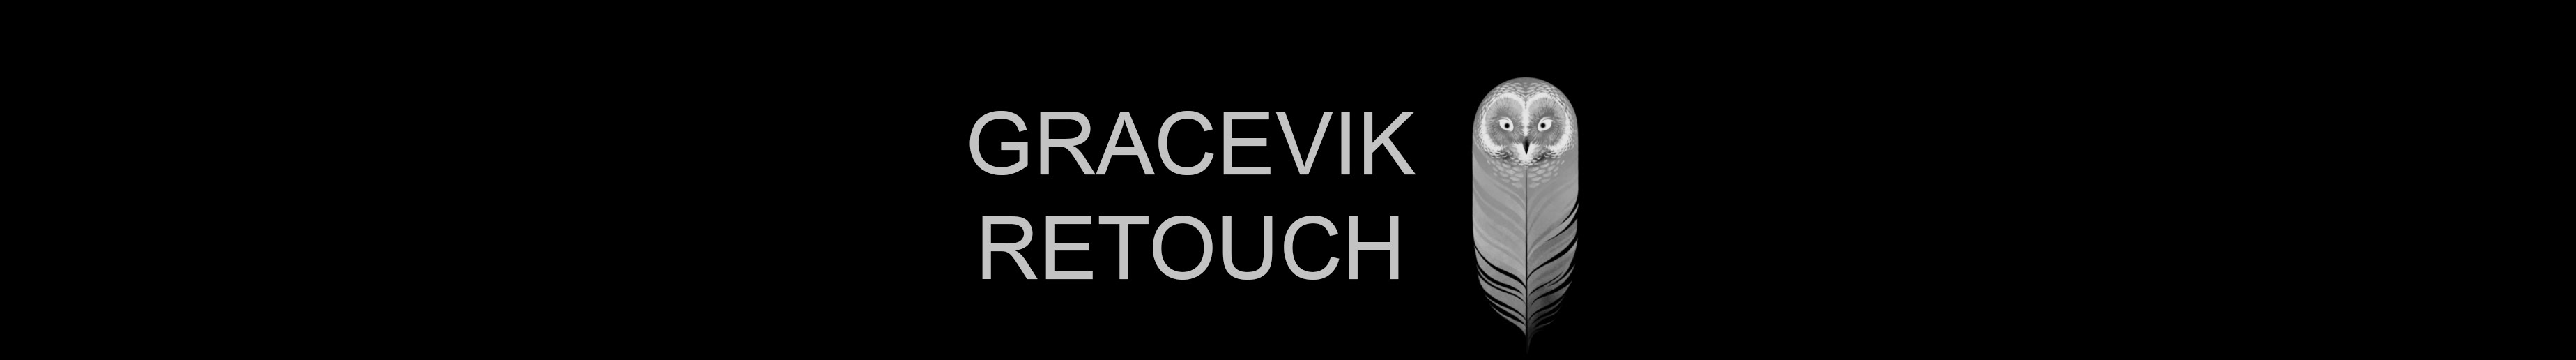 Gracevik Retouch's profile banner